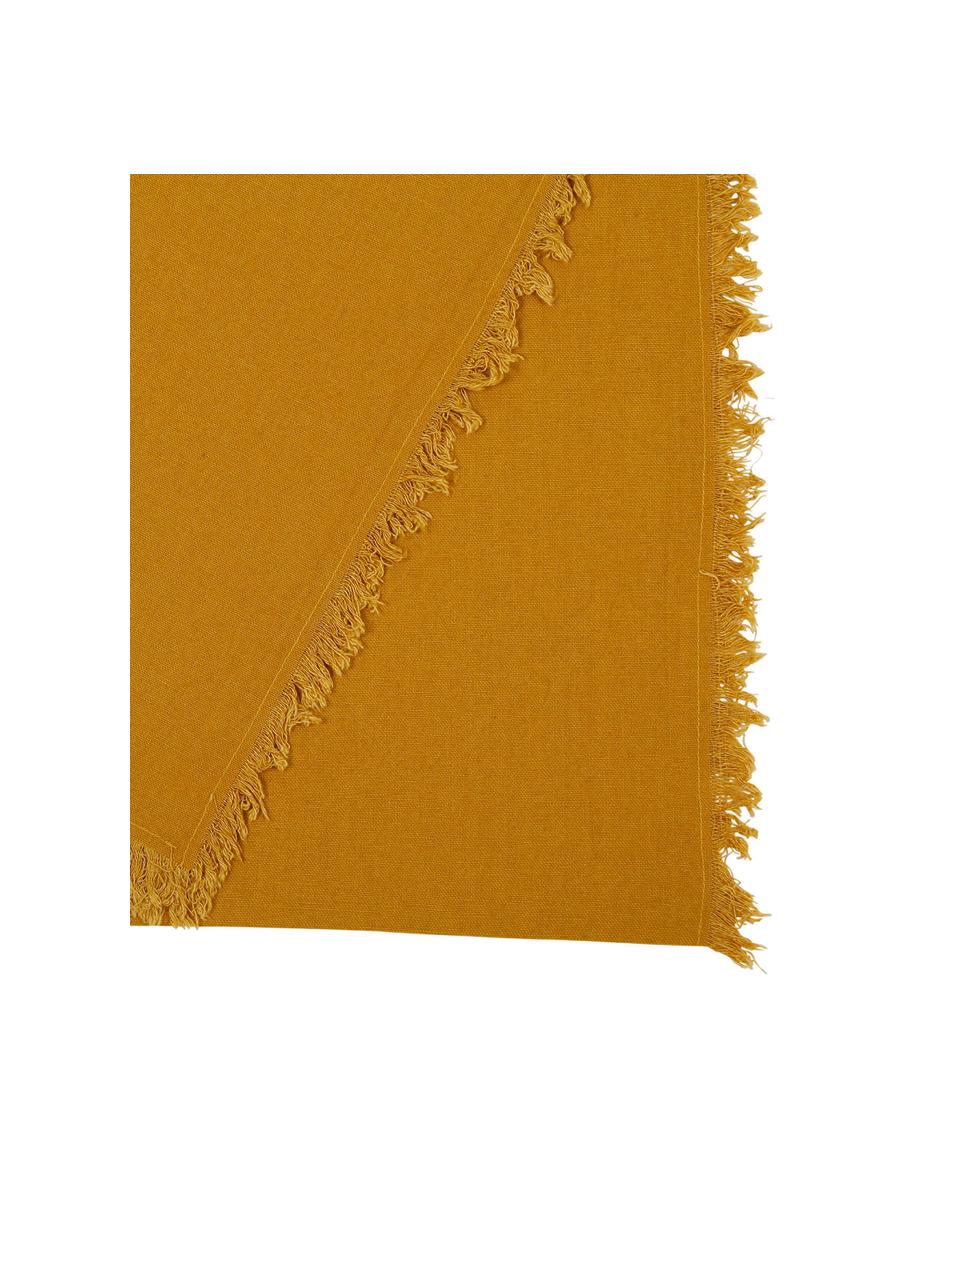 Runner in cotone giallo senape con frange Nalia, Cotone, Giallo, Larg. 50 x Lung. 160 cm